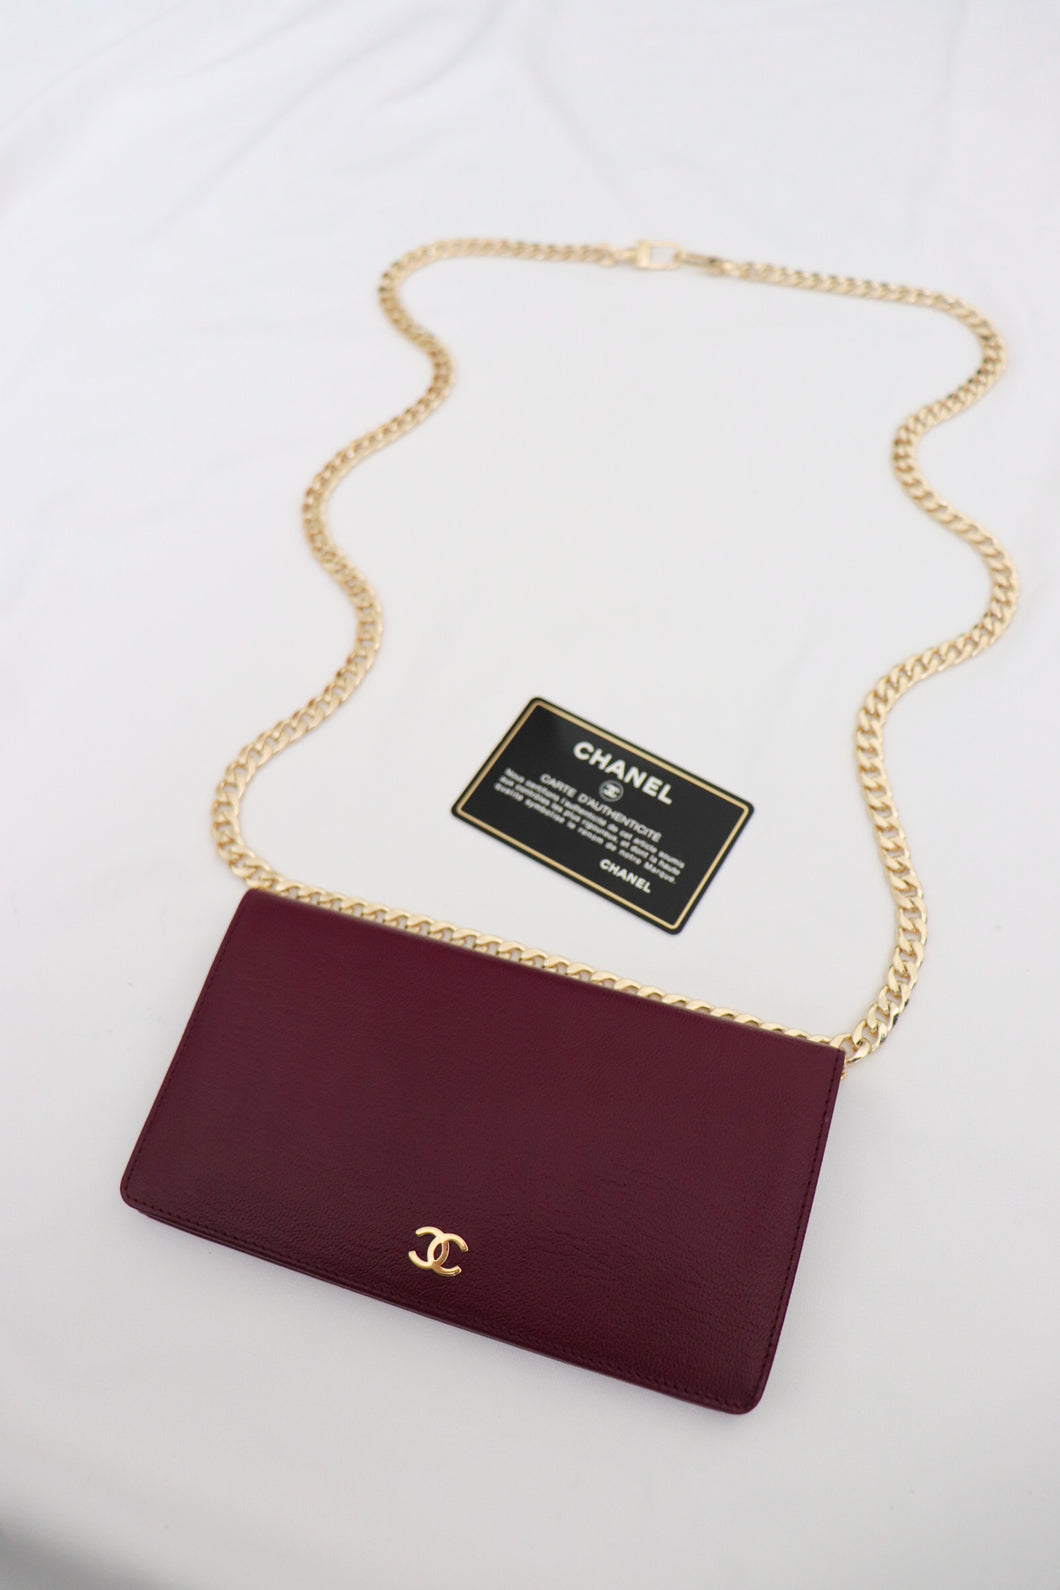 Chanel bifold calfskin wallet in burgundy